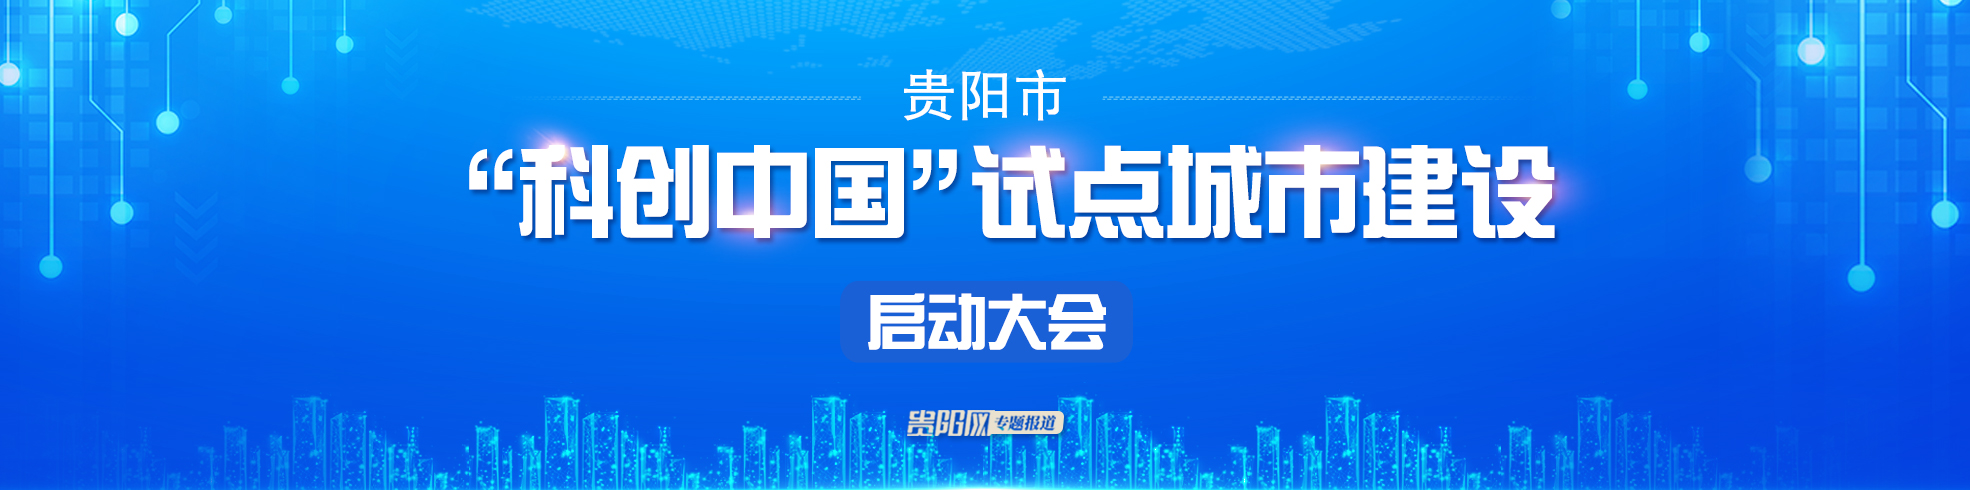 【专栏】贵阳市“科创中国”试点城市建设启动大会